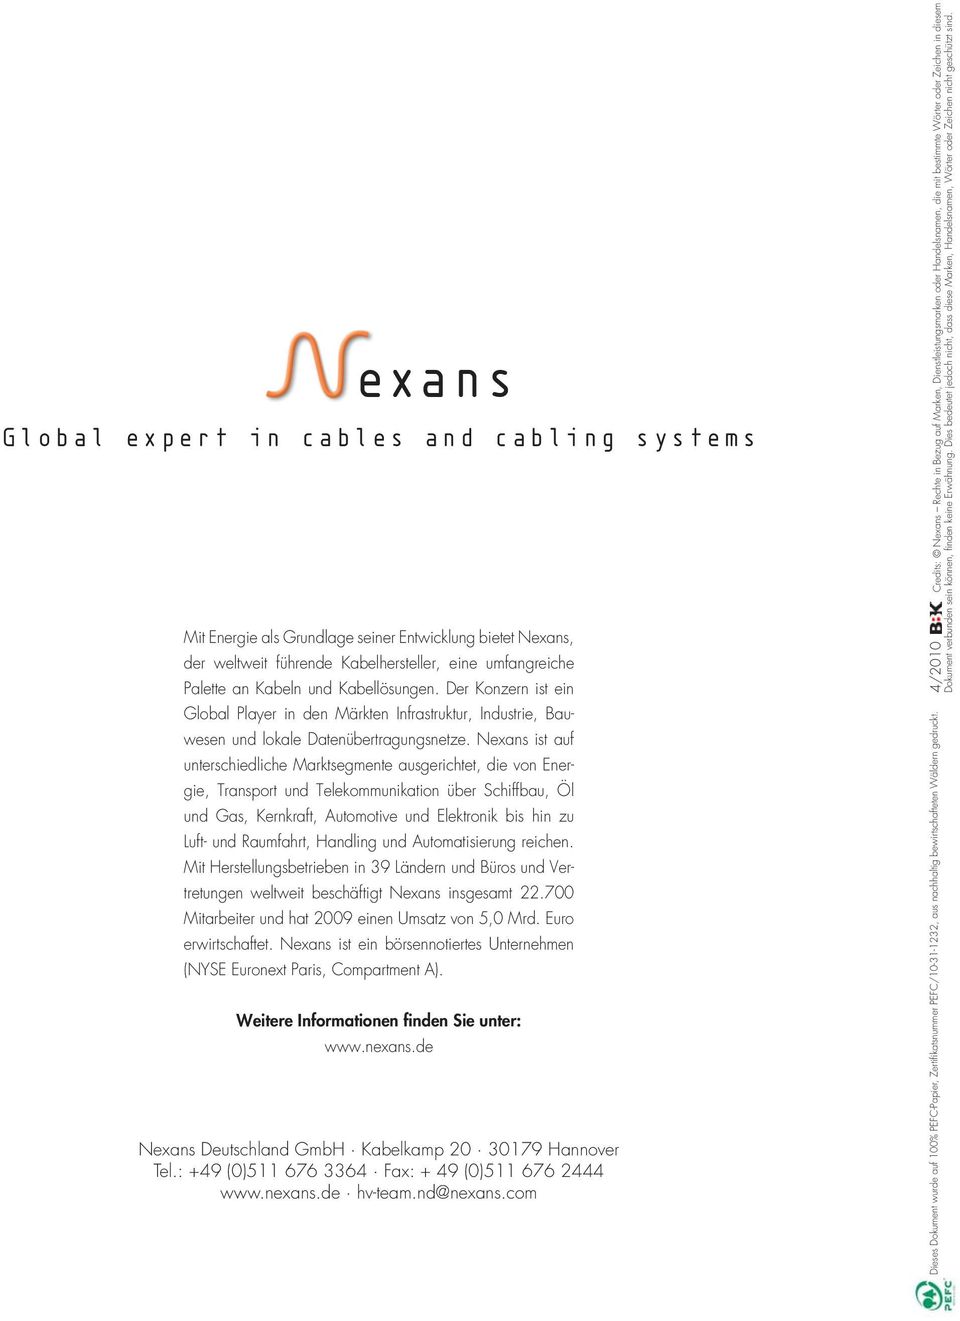 Nexans ist auf unterschiedliche Marktsegmente ausgerichtet, die von Energie, Transport und Telekommunikation über Schiffbau, Öl und Gas, Kernkraft, Automotive und Elektronik bis hin zu Luft- und